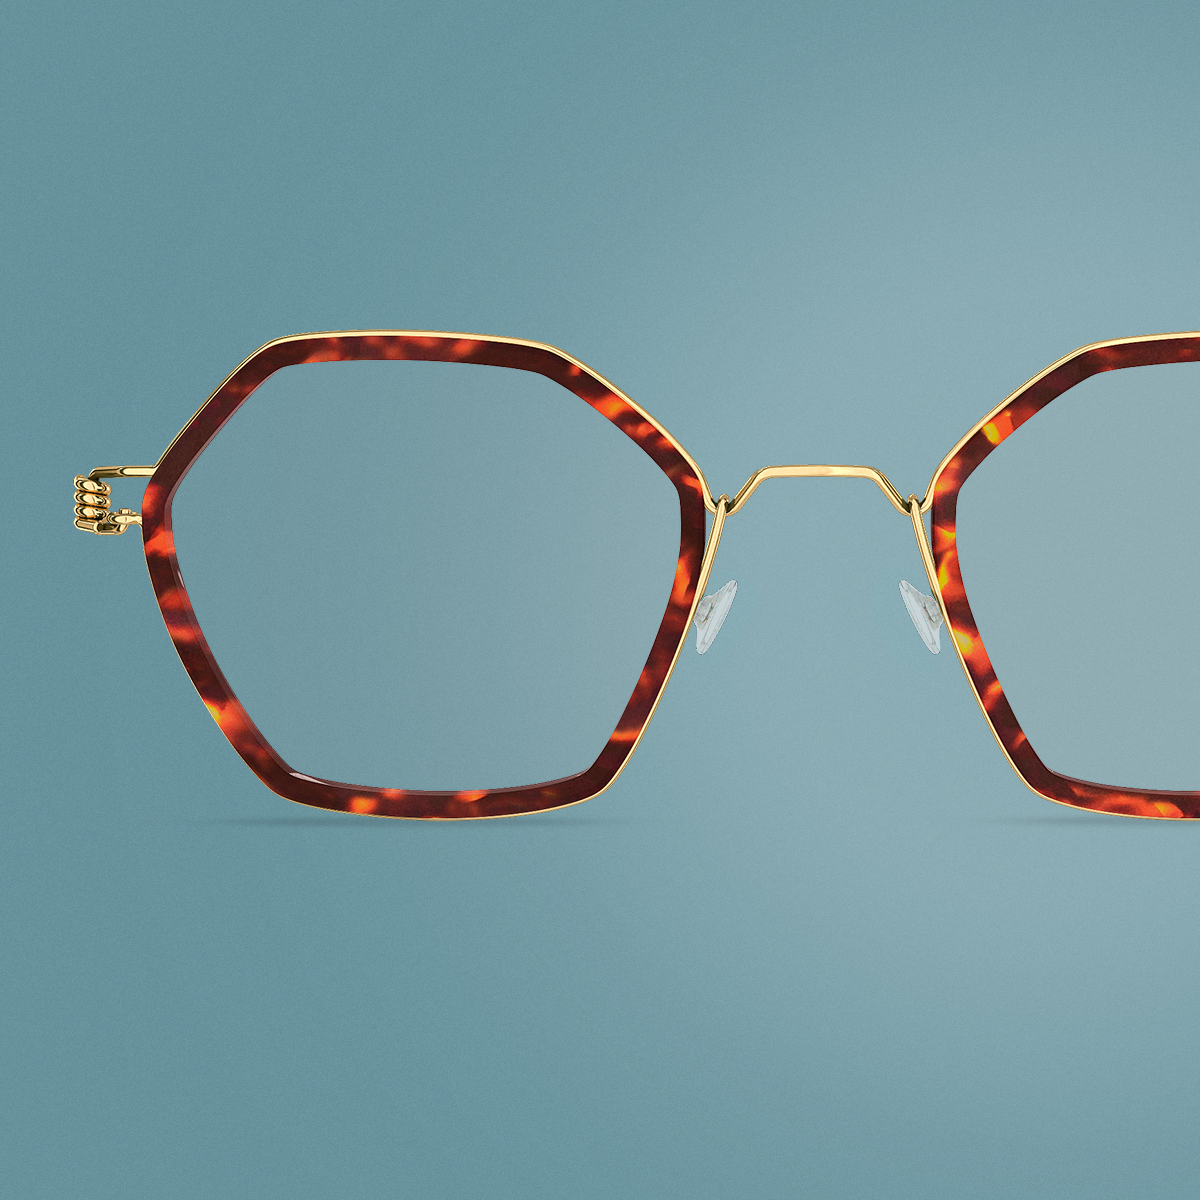 Detailansicht einer goldenen Brille mit Innenfassung aus Acetat, Modell Rui GT, aus der Kollektion LINDBERG rim in einem Editorial für das DANSK-Magazin